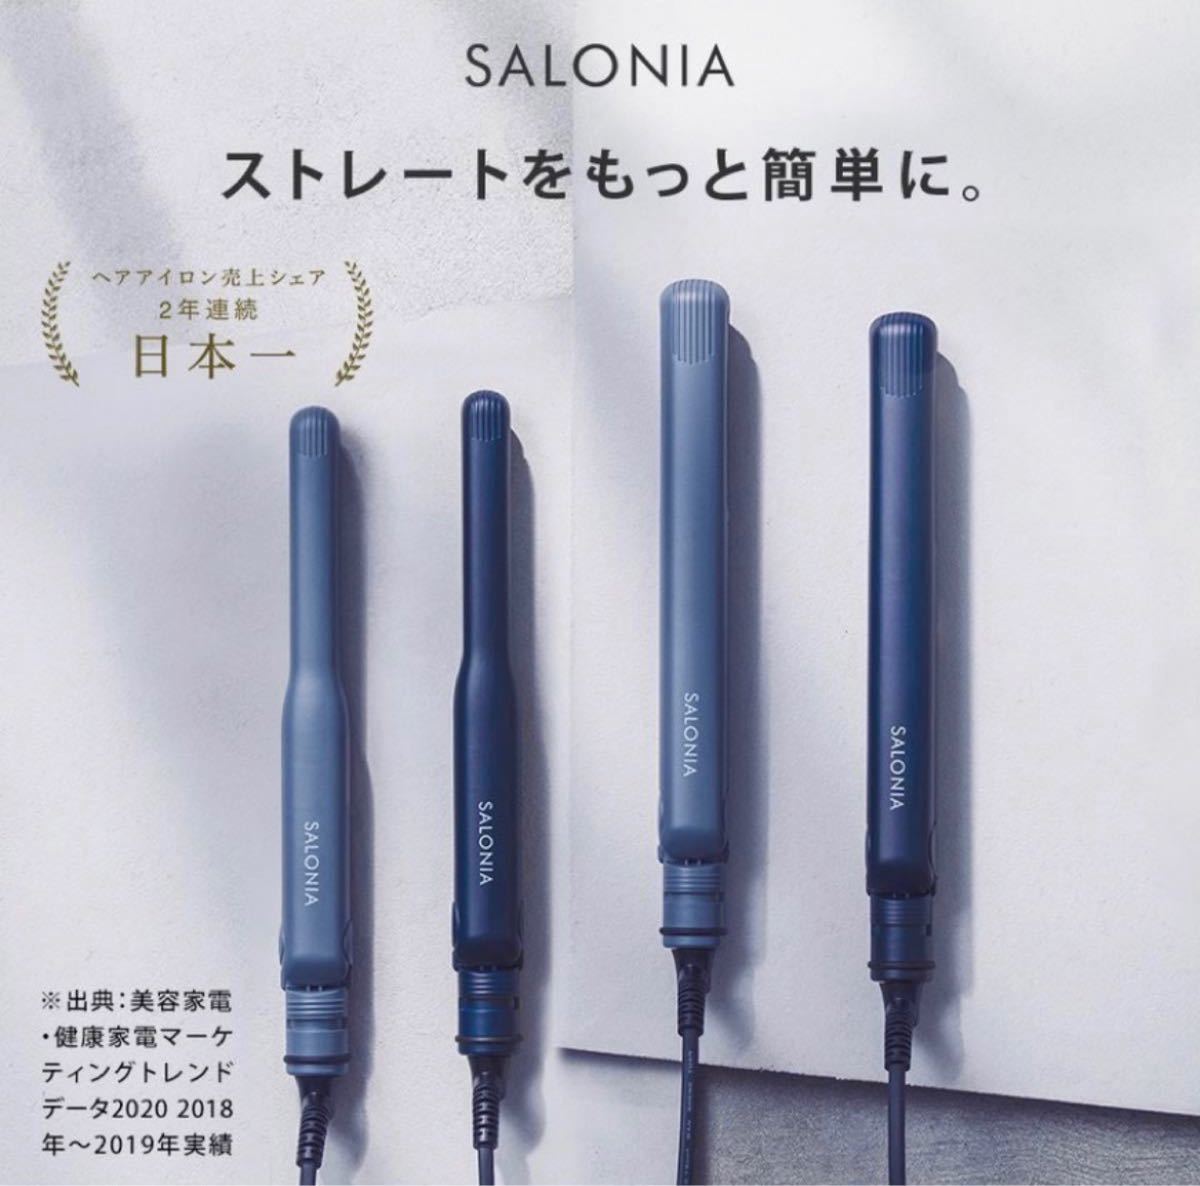 サロニア ストレートアイロン SL004S SALONIA ネイビー 24mm